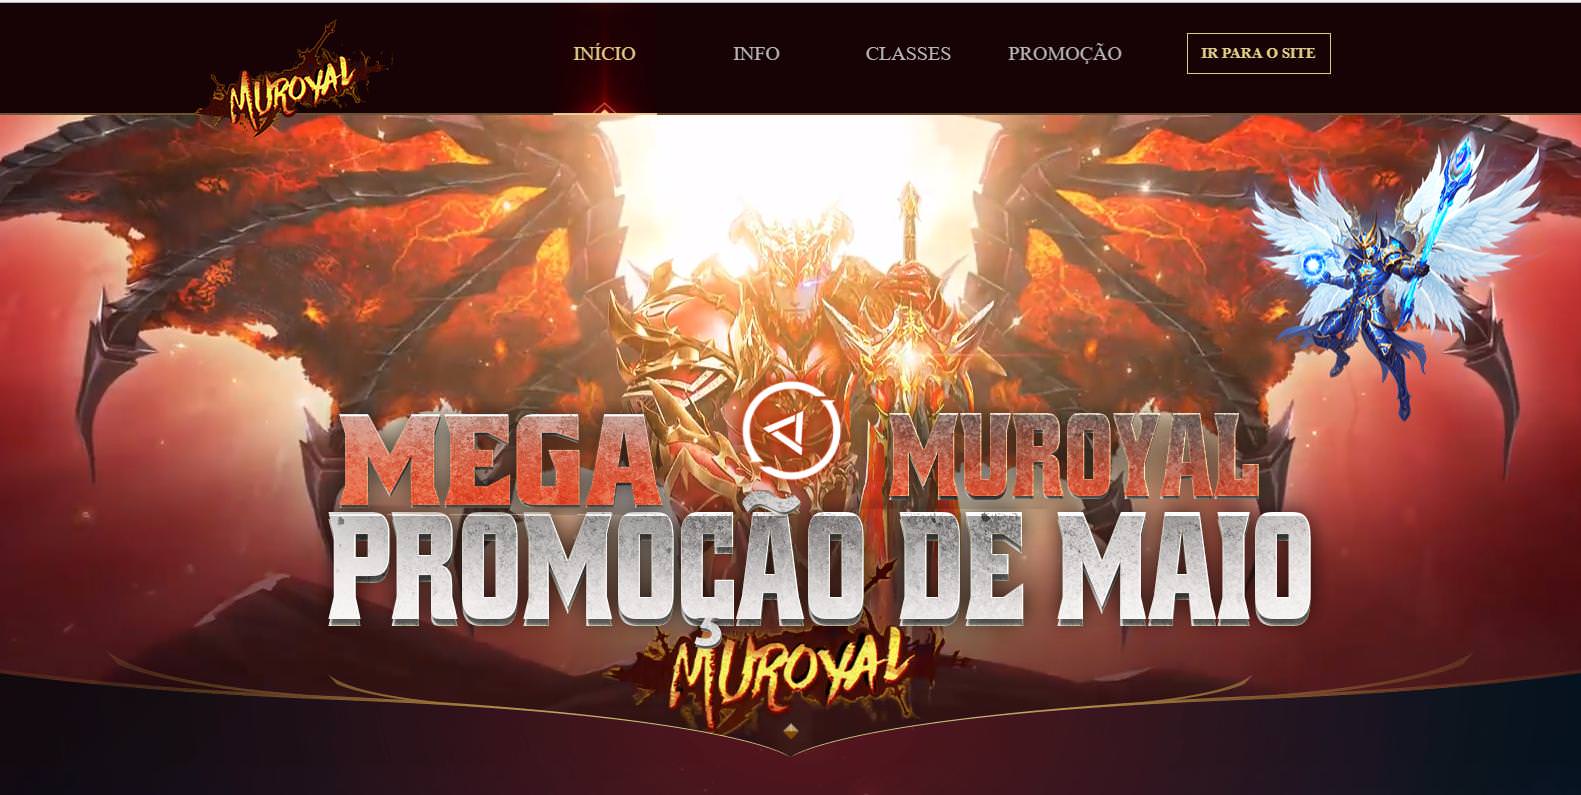 Intro  Entrada MuRoyal EP14 - Mu Online atualizado , como criar servidor de mu online season 14 portugues pt/br , discord da galera mu online